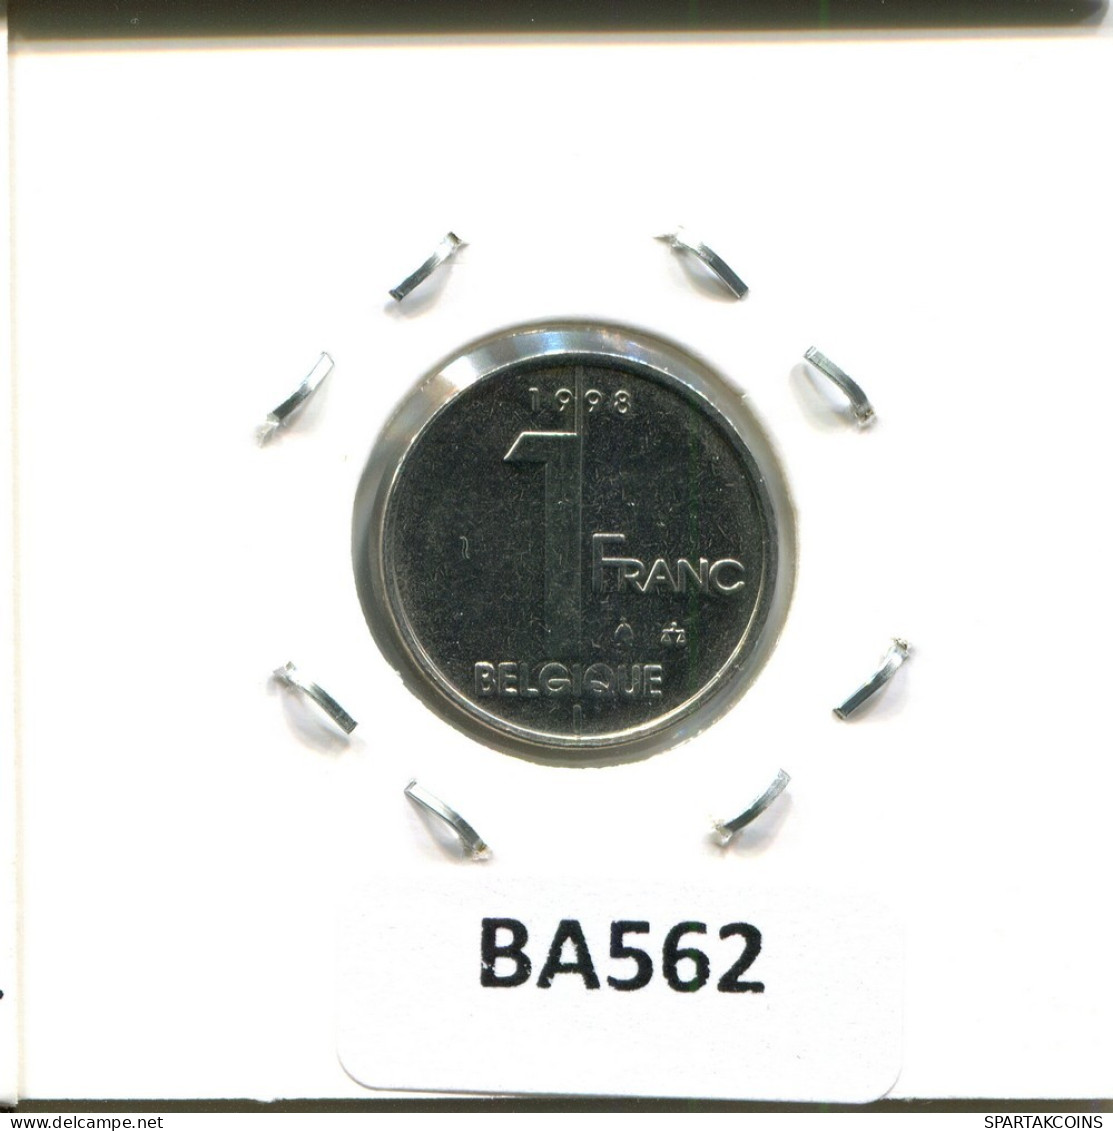 1 FRANC 1998 FRENCH Text BELGIUM Coin #BA562.U.A - 1 Franc